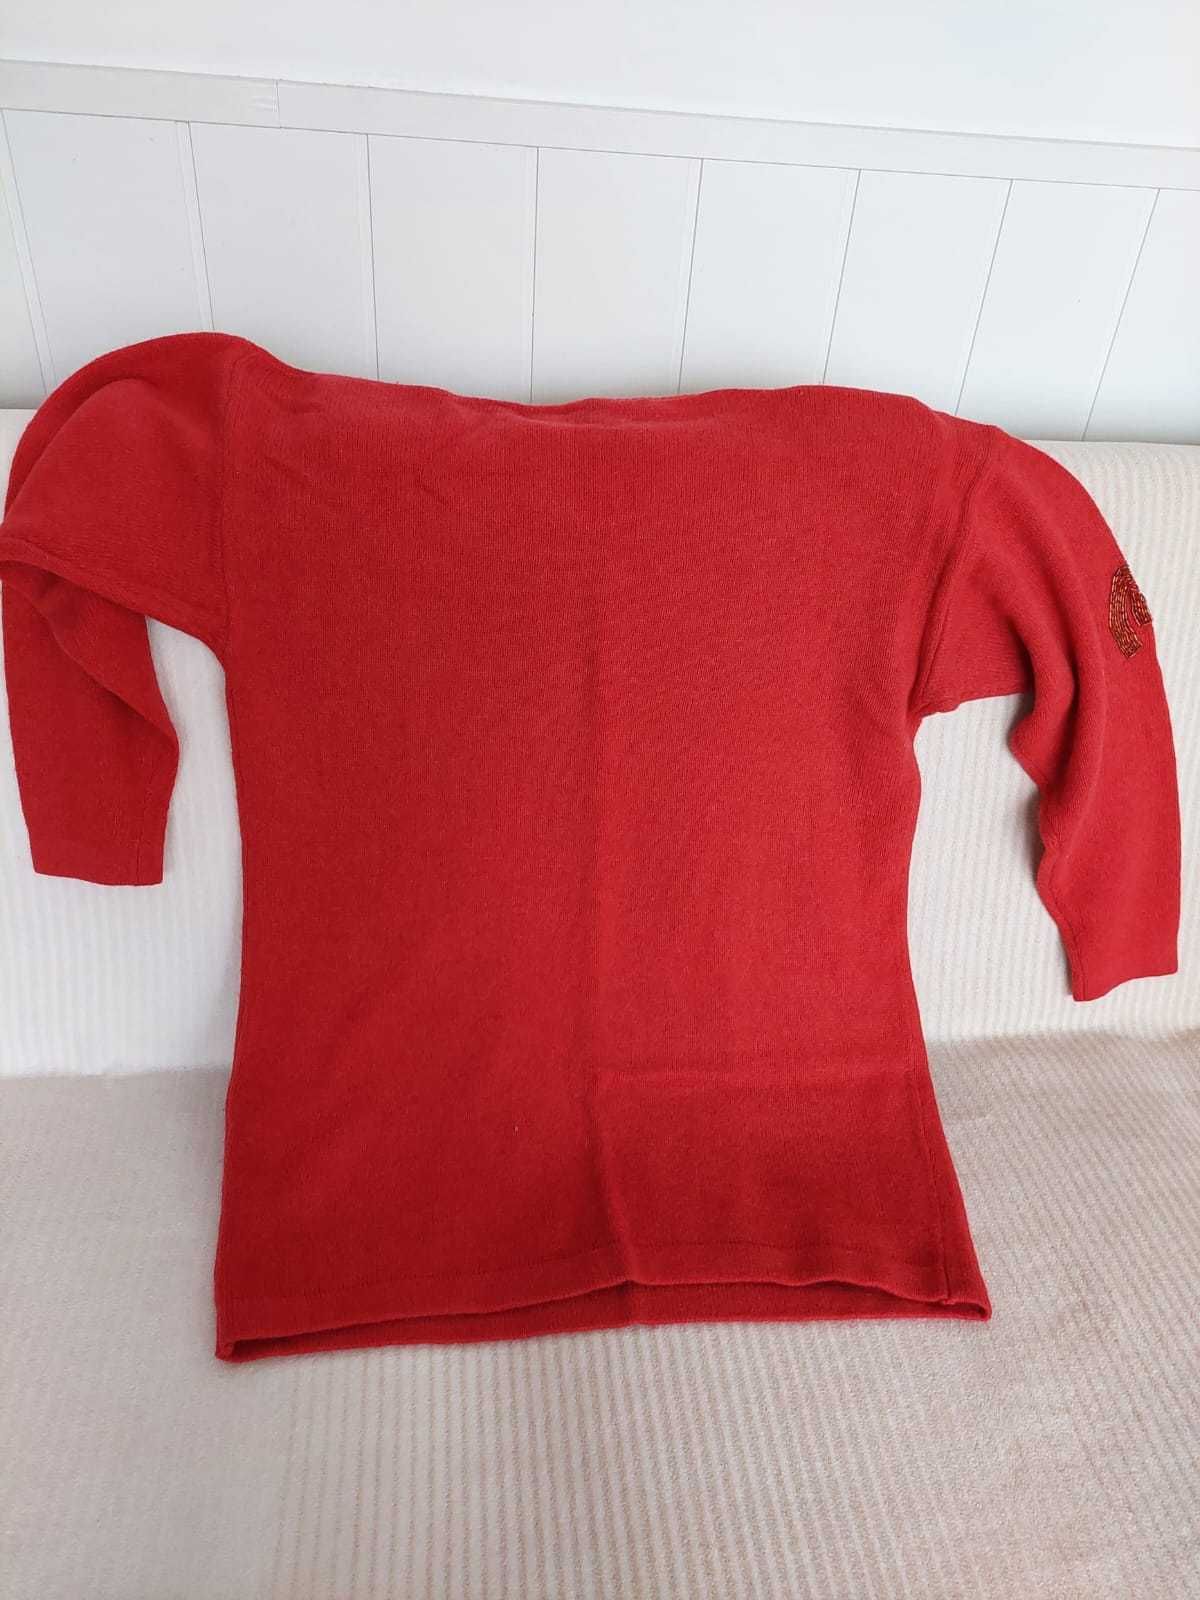 Czerwony sweterek.